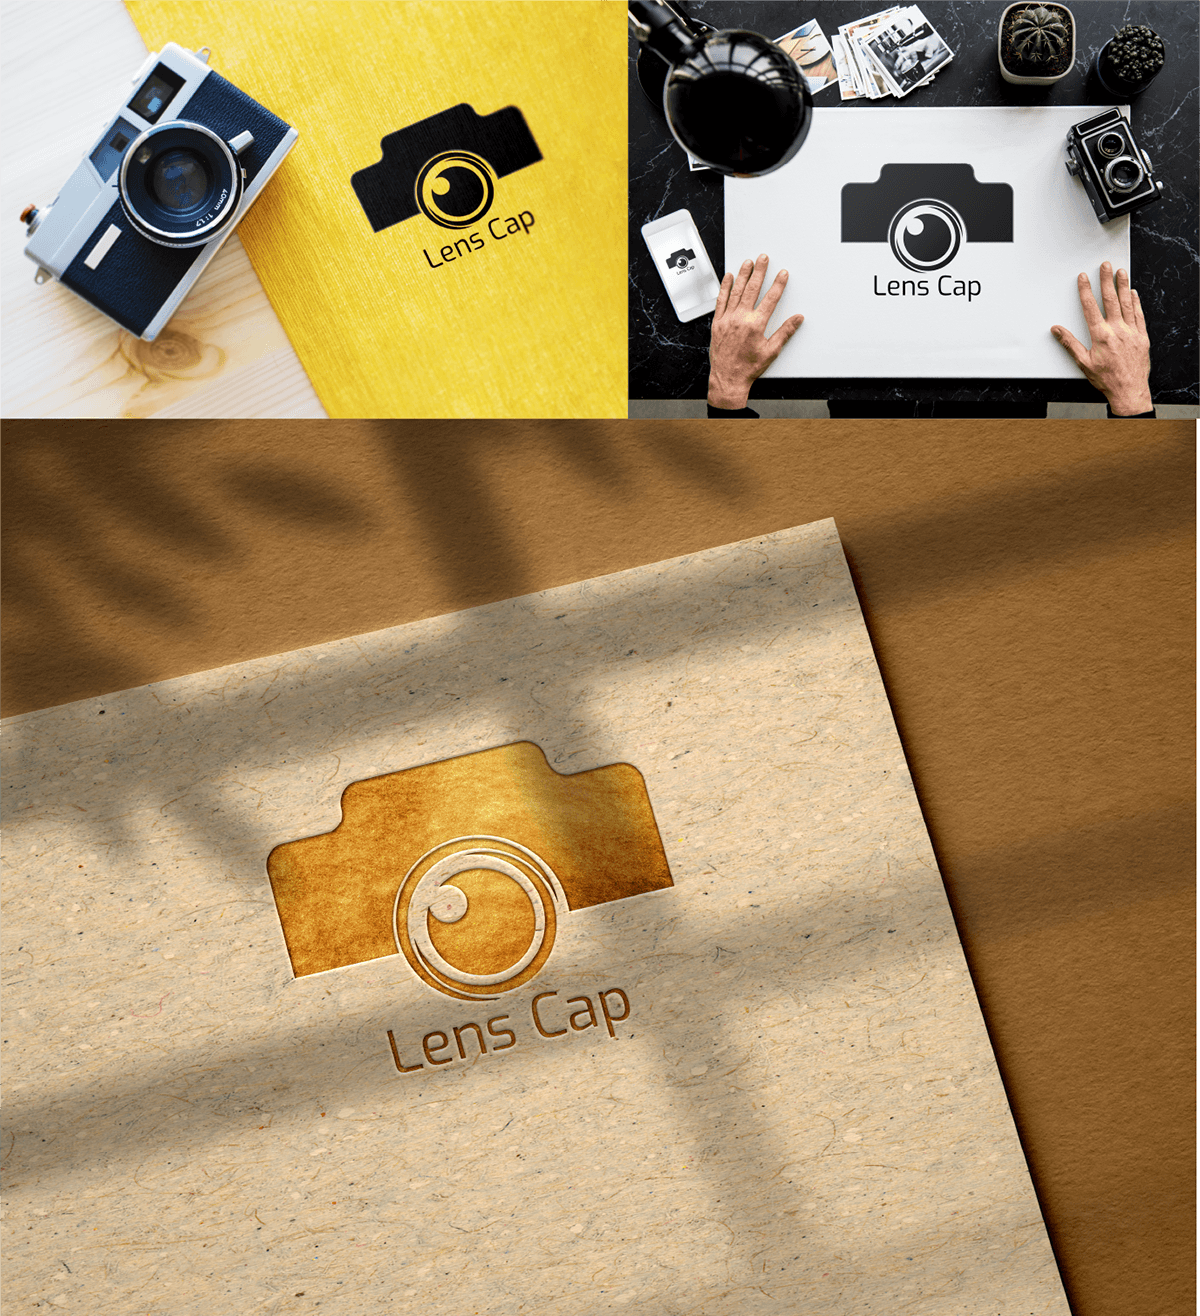 #CreativeJourney #designinspiration #GraphicDesignMagic #LensMagic #logocreation #logoshowcase #PhotographyInnovation📸 #visualstorytelling